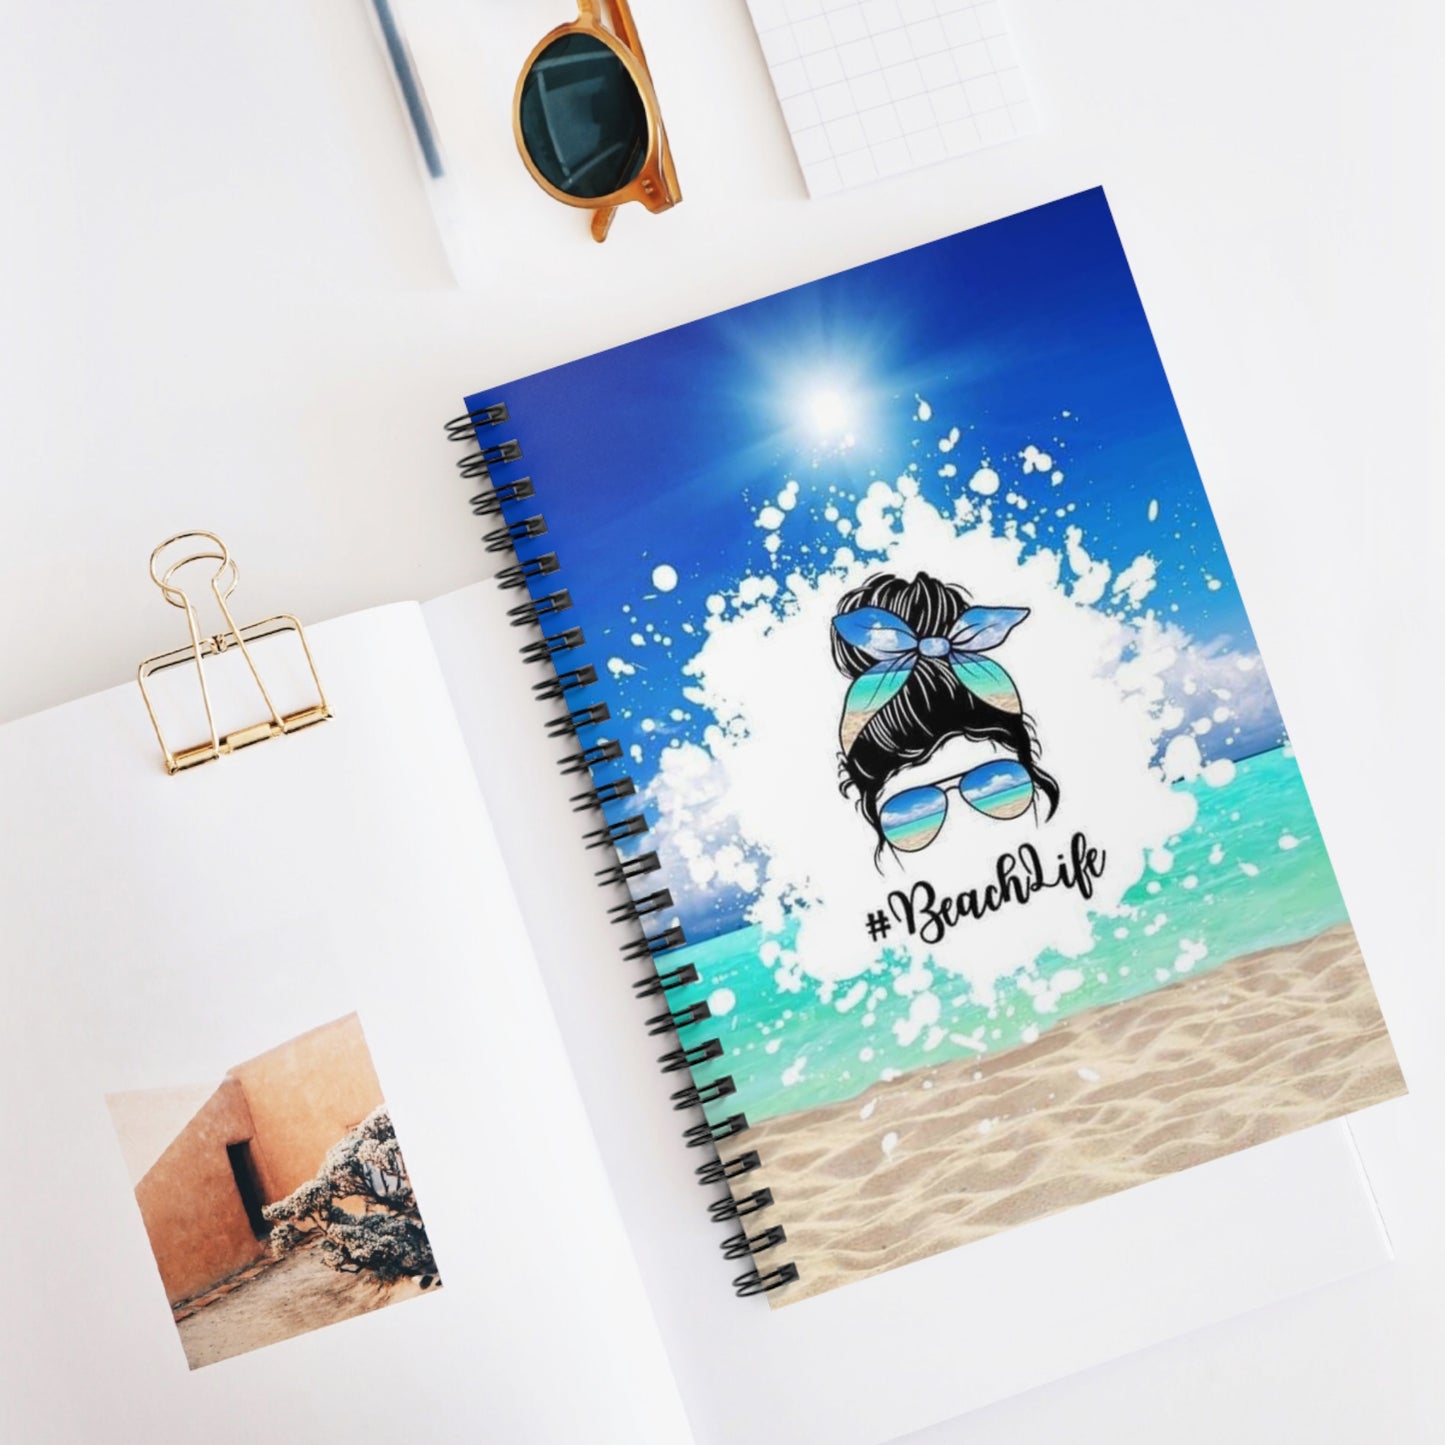 Beach Life Spiral Notebook - Ruled Line